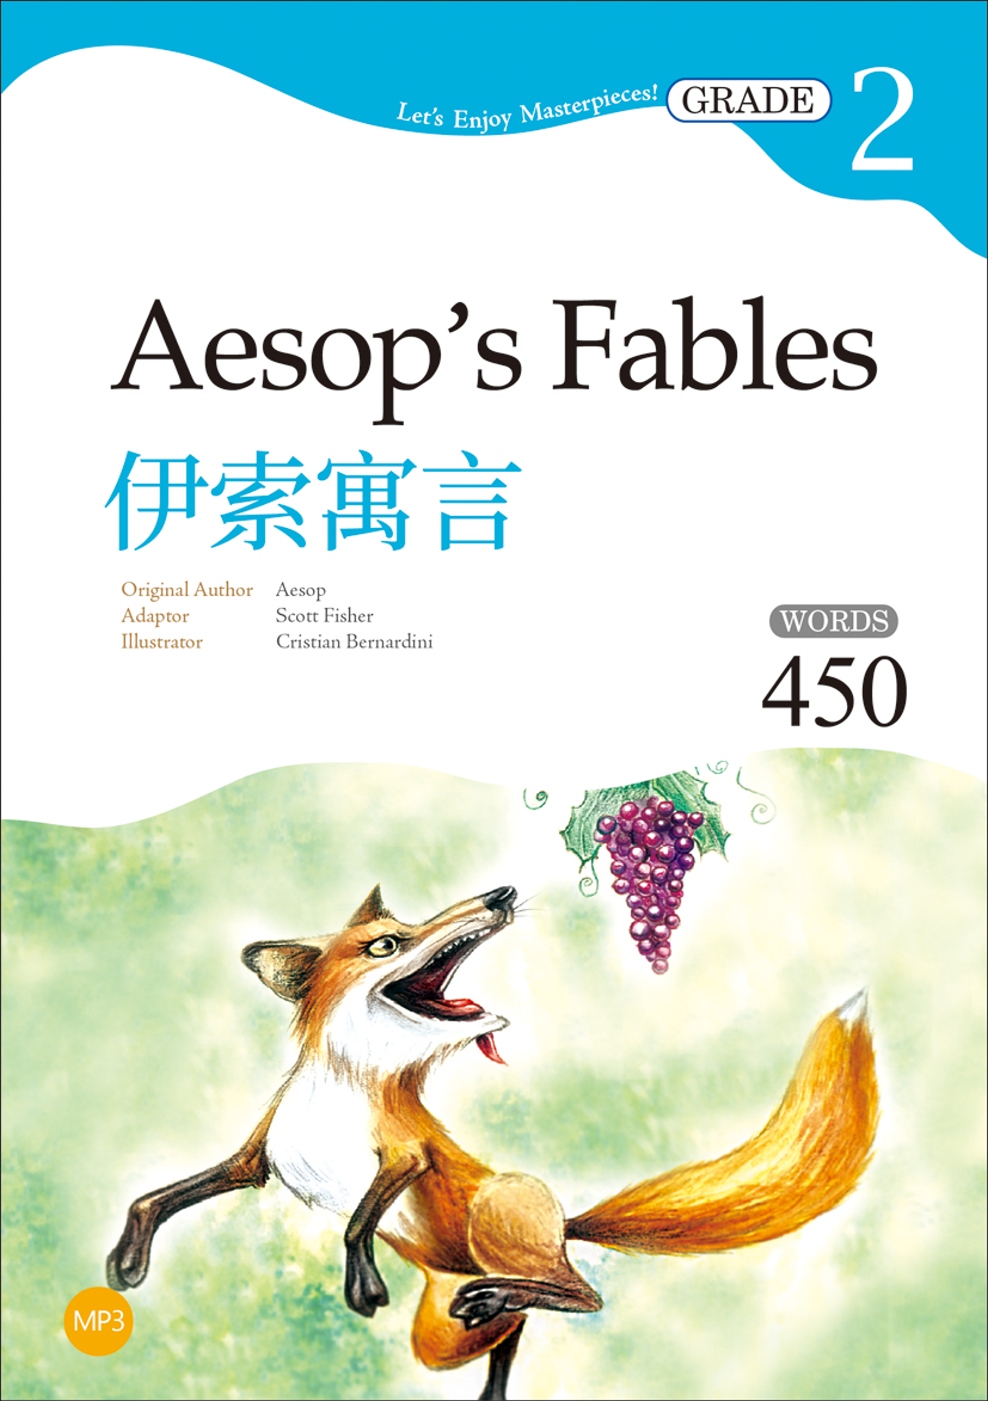 伊索寓言 Aesop’s Fables【Grade 2經典文...